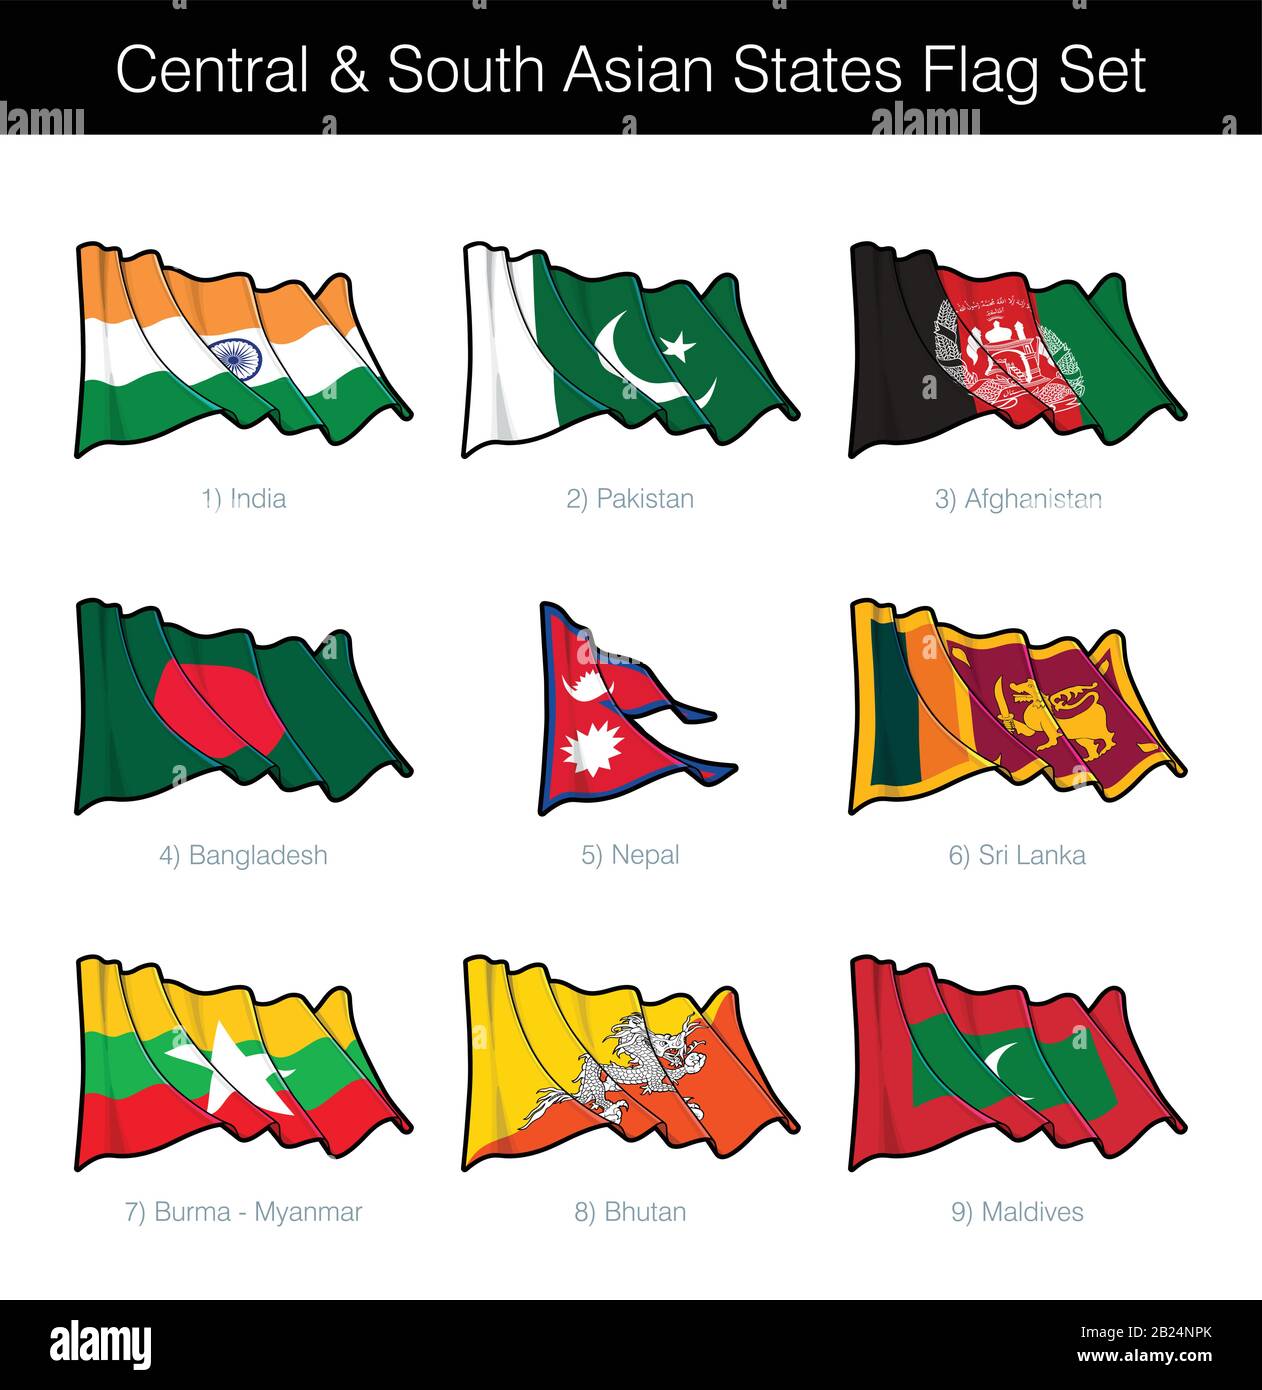 États D'Asie Centrale Et Du Sud Agitant L'Ensemble De Drapeaux. L'ensemble comprend les drapeaux de l'Inde, du Pakistan, de l'Afghanistan, du Bangladesh, du Népal, du Sri Lanka, de la Birmanie, de Bhuta Illustration de Vecteur